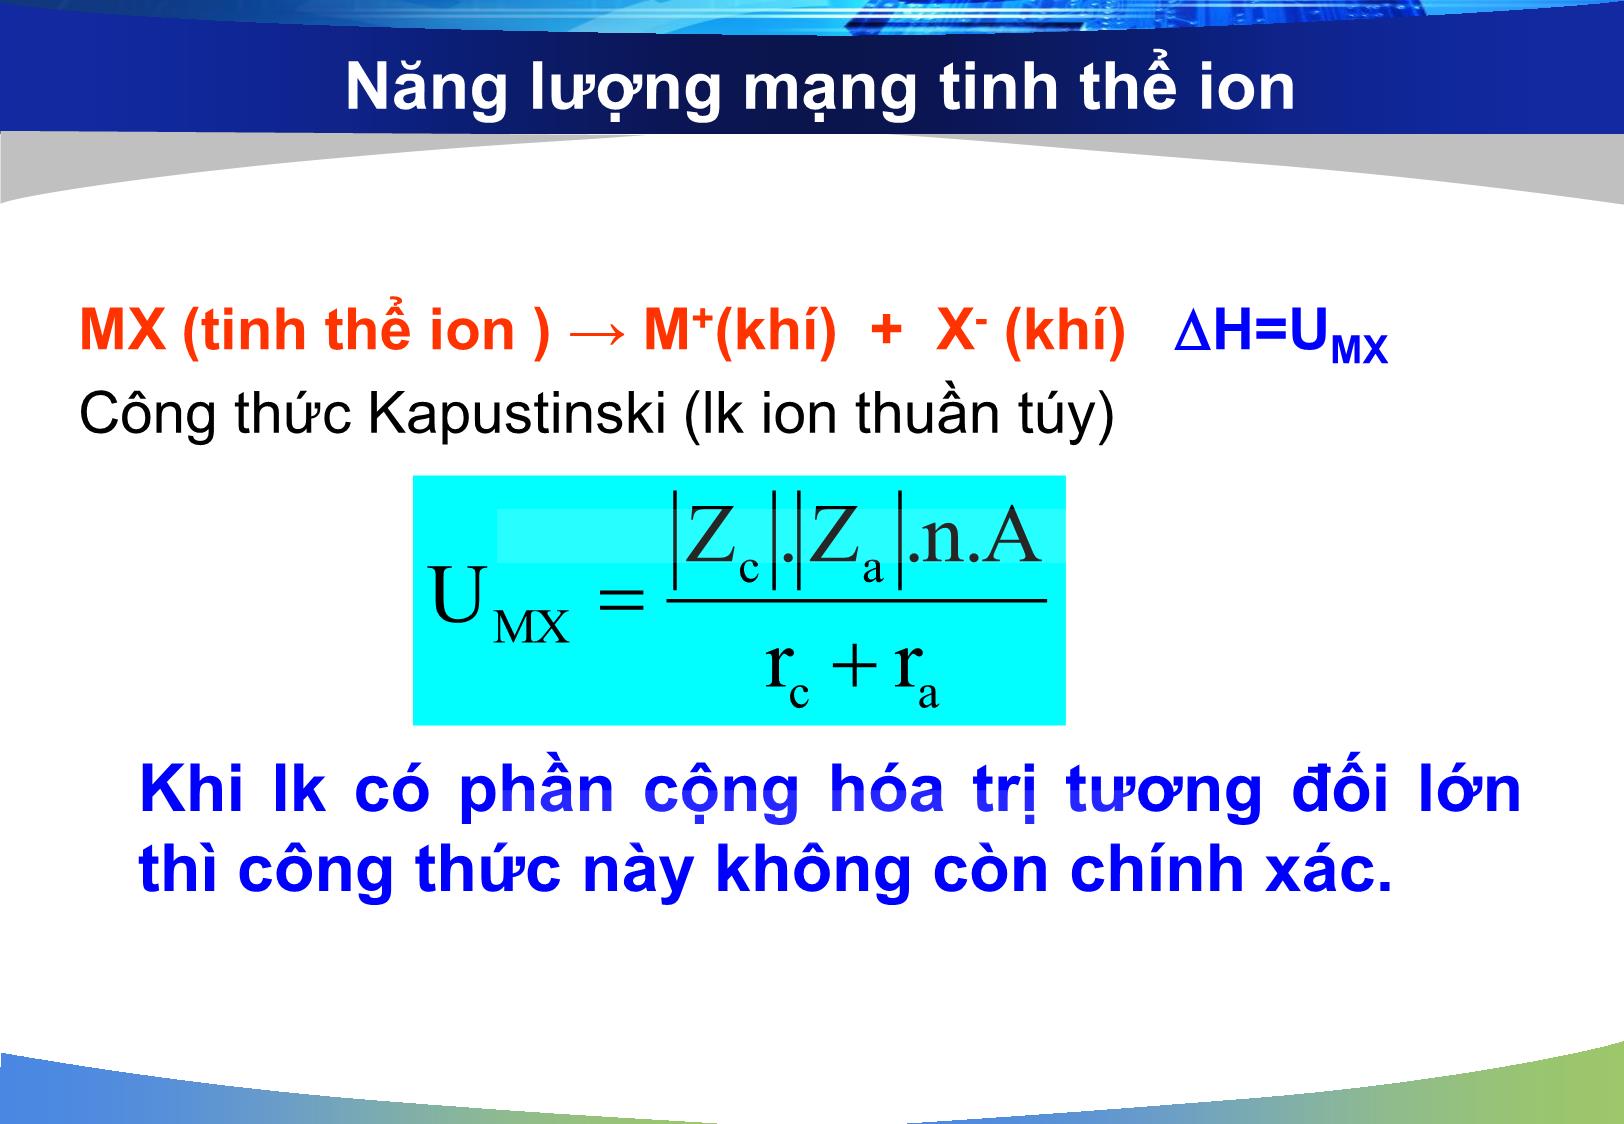 Bài giảng môn Hóa đại cương: Liên kết hóa học và cấu tạo phân tử - Nguyễn Minh Kha trang 9